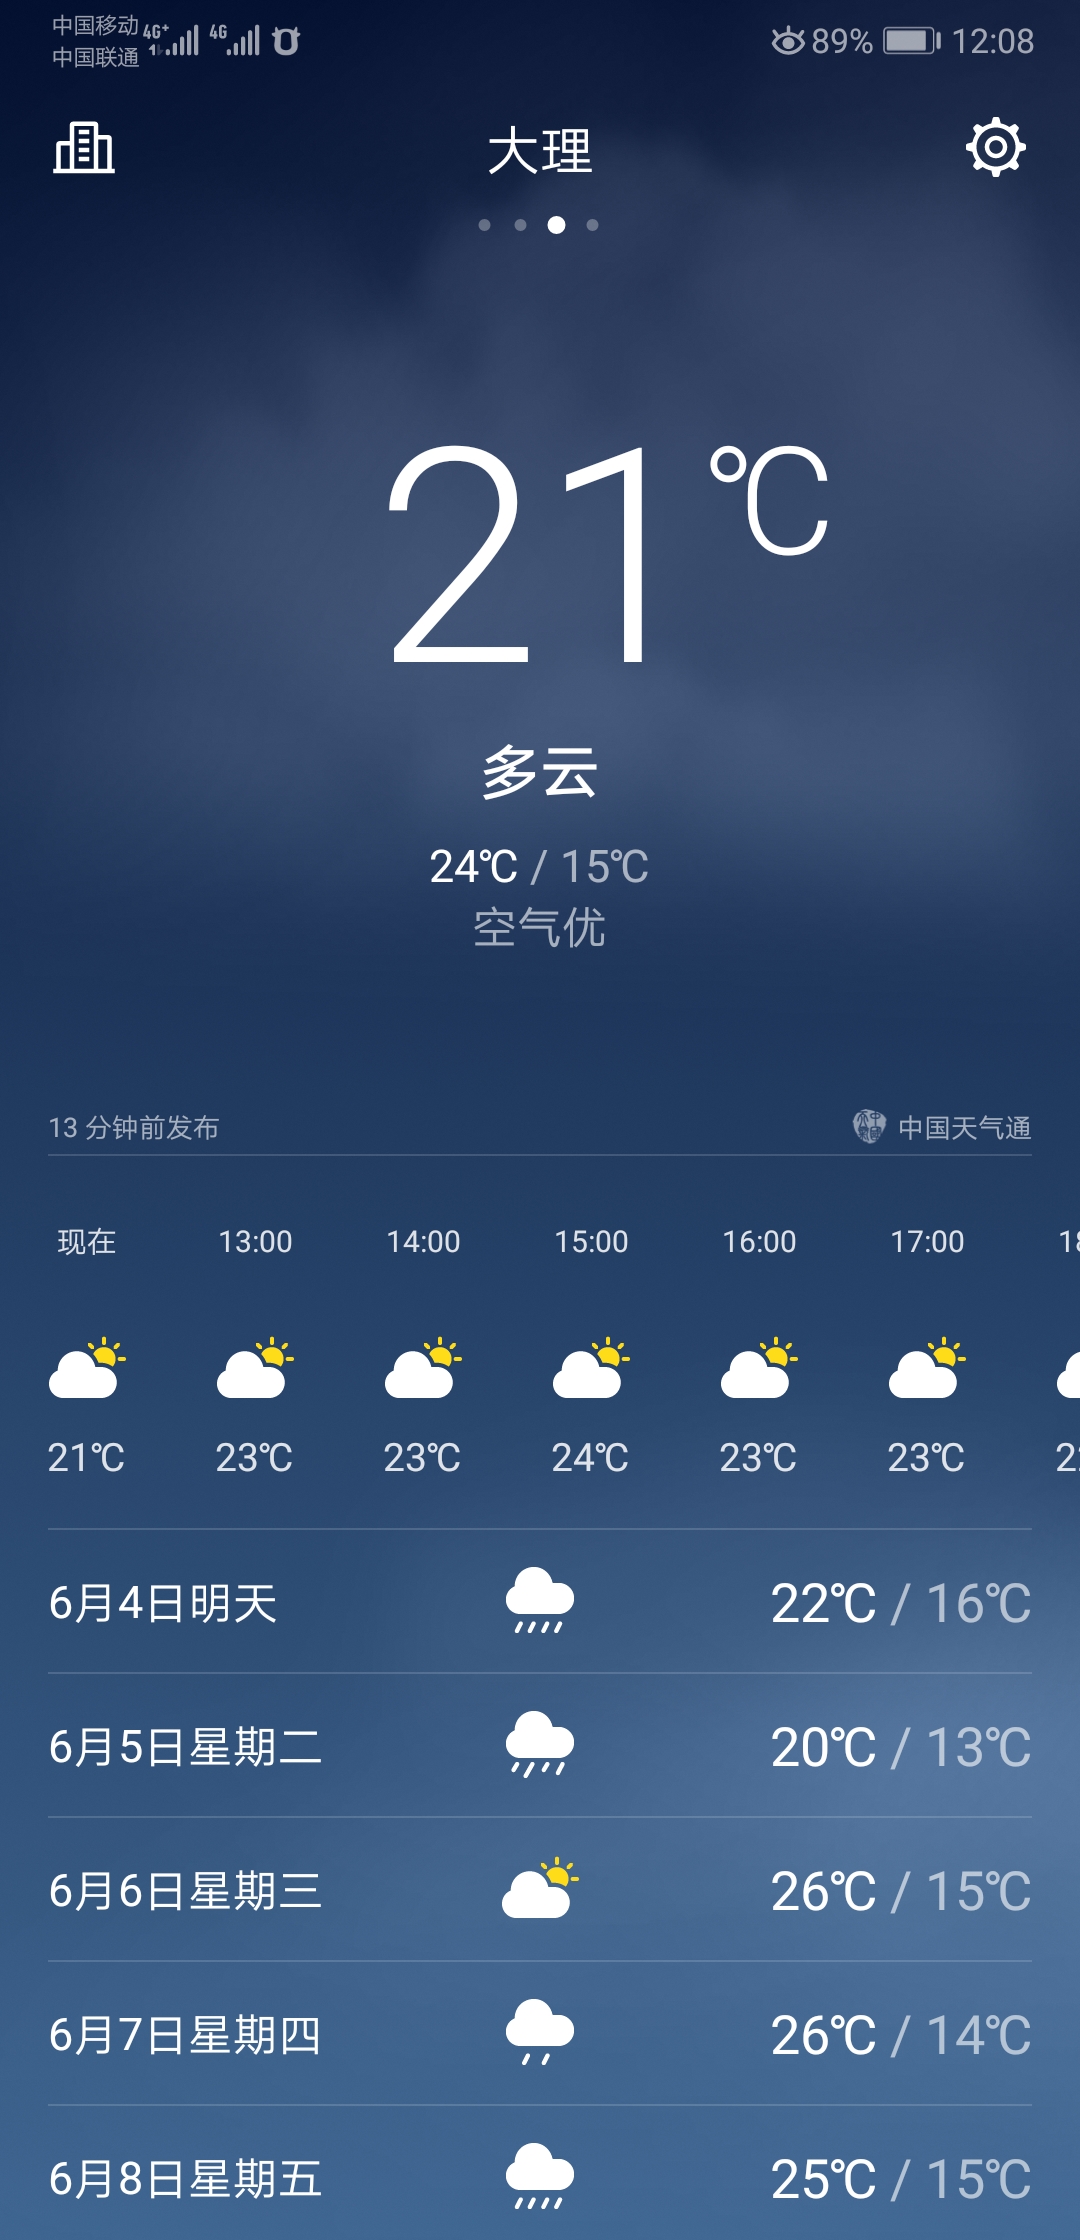 6月底丽江,泸沽湖,大理天气